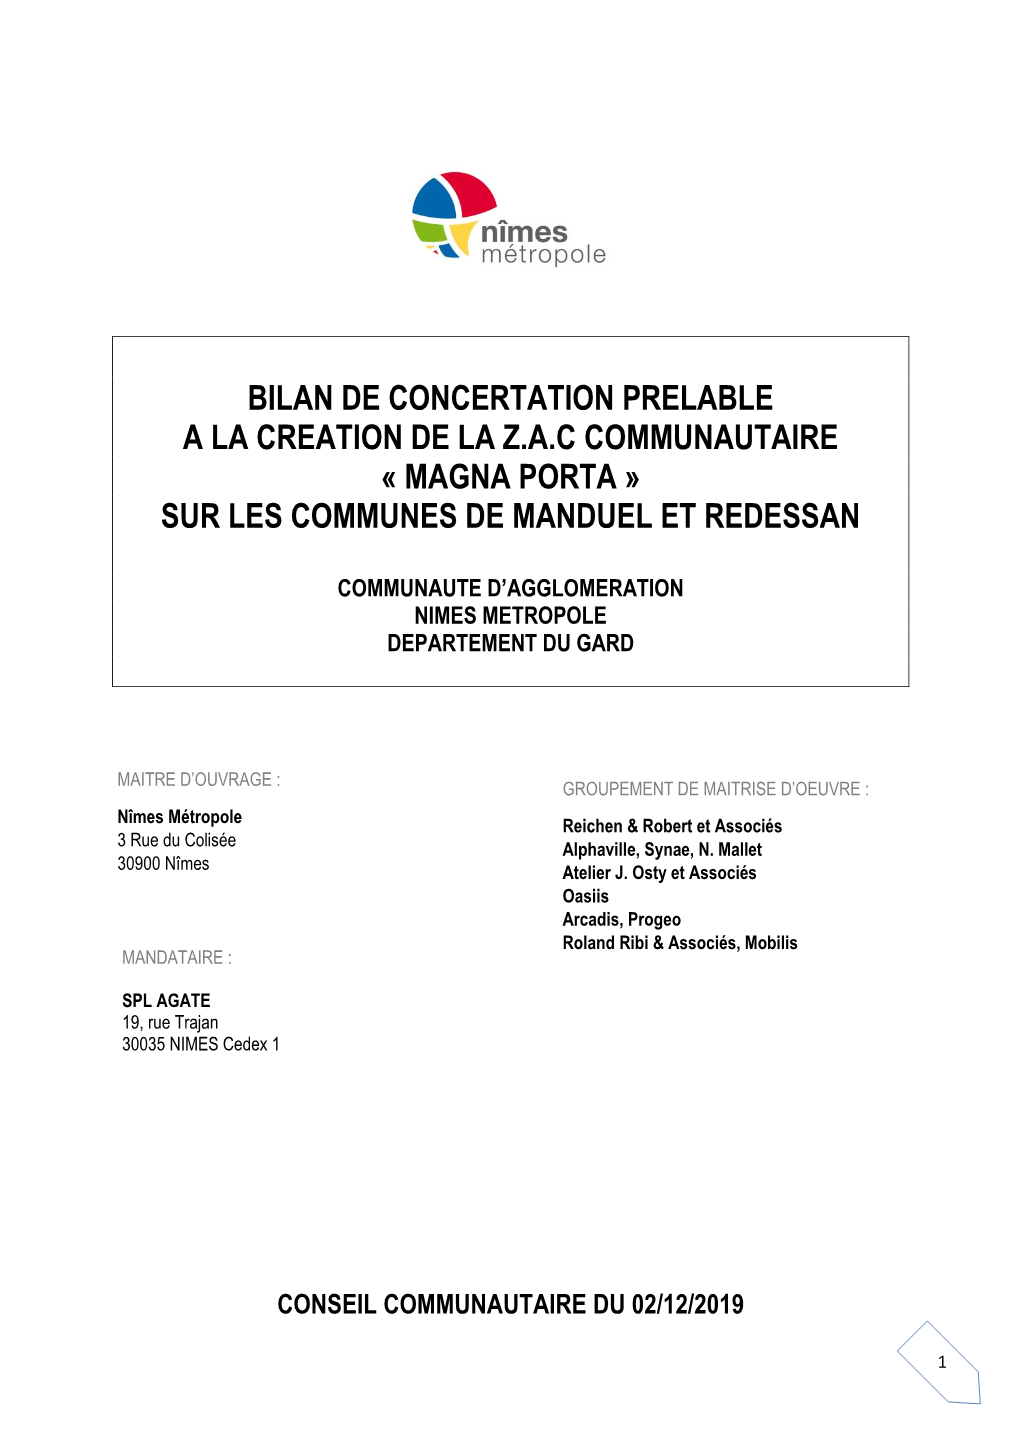 Bilan De Concertation Prelable a La Creation De La Z.A.C Communautaire « Magna Porta » Sur Les Communes De Manduel Et Redessan